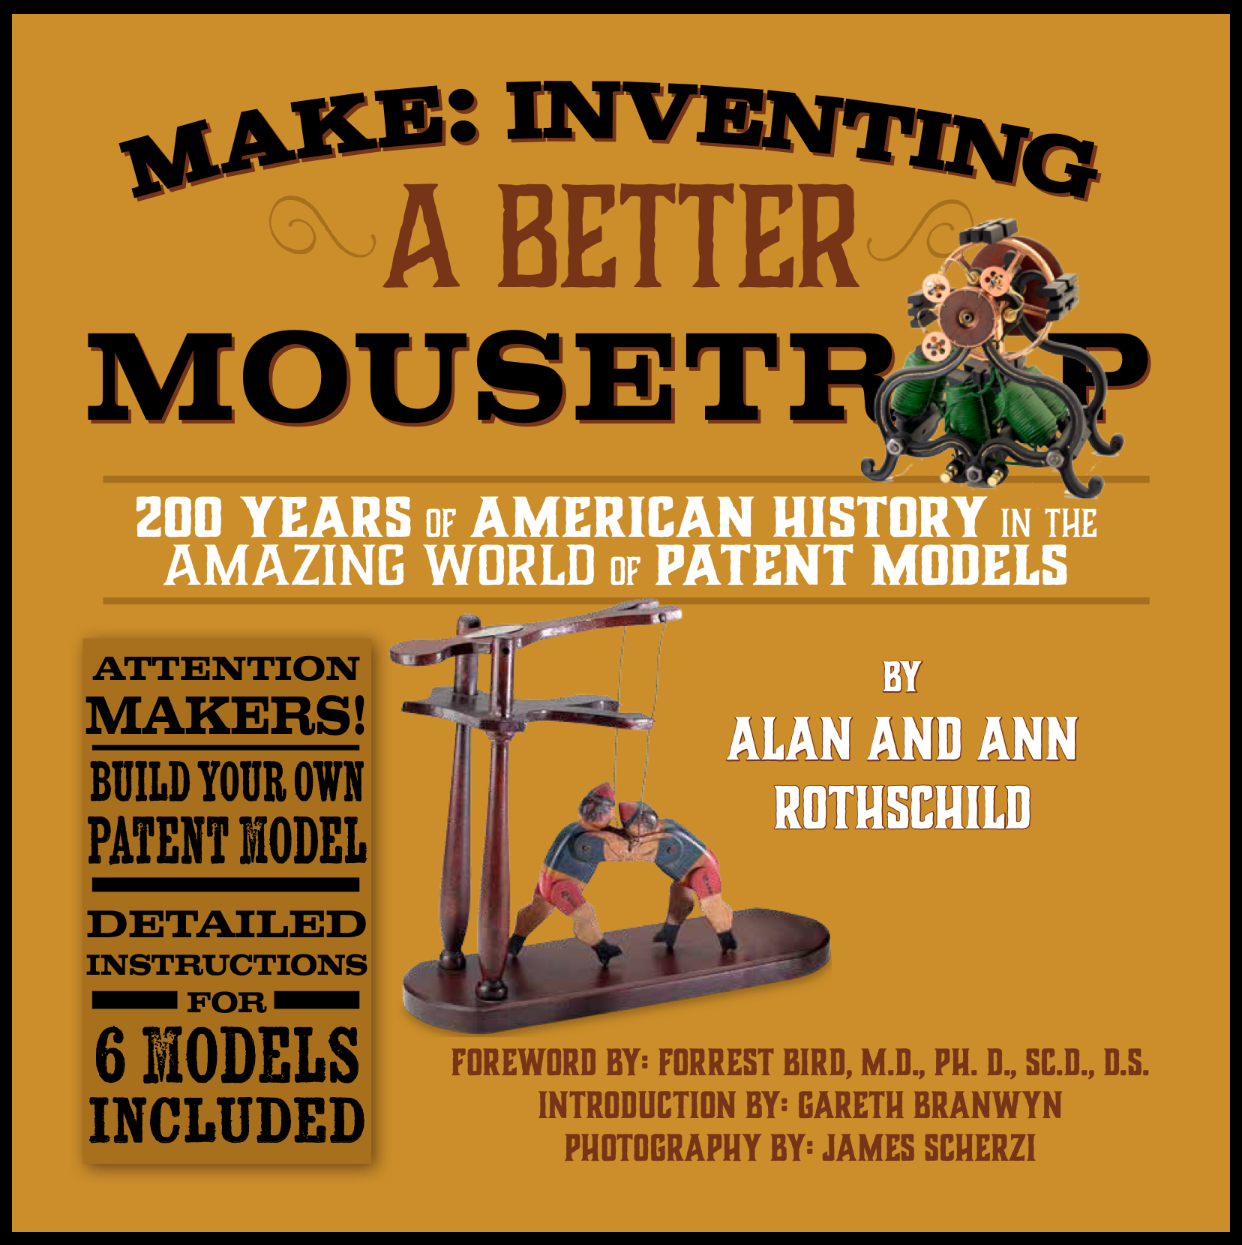 Mouse Trap History - Build a Better Mousetrap